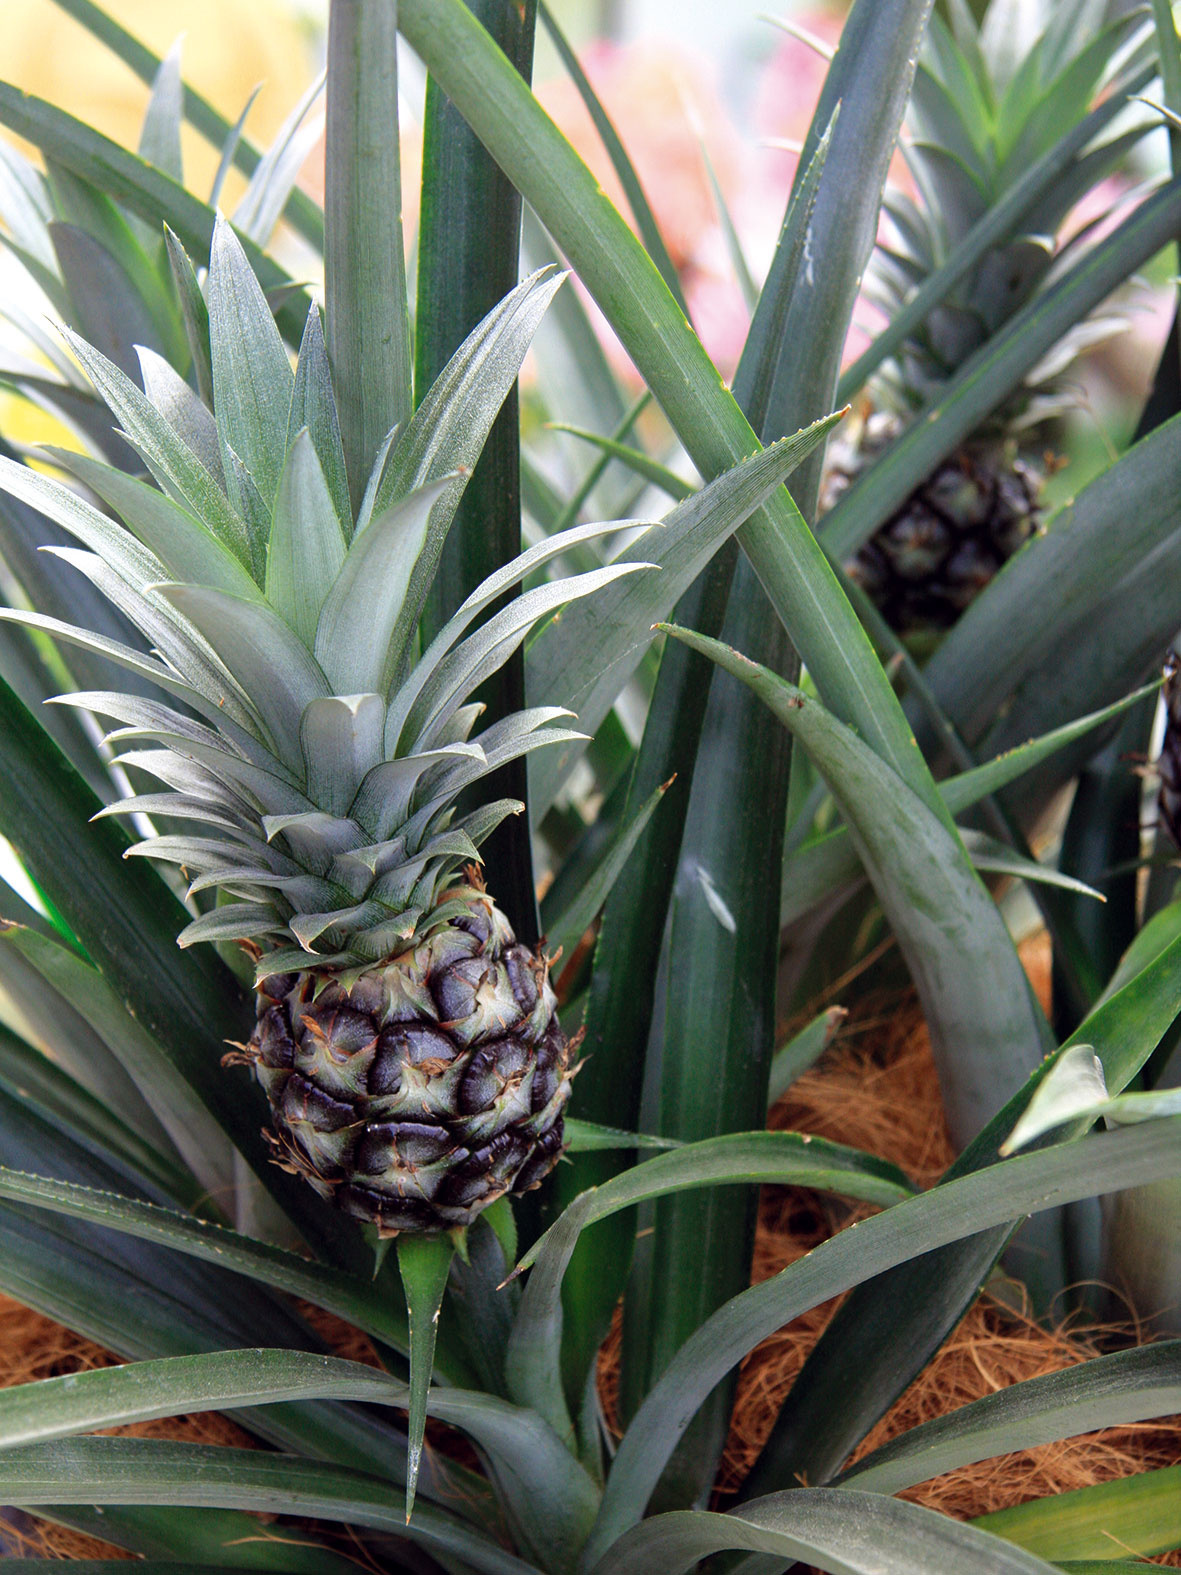 Ako pestovať ananás  Ananás (Ananas comosus) je vďačnou izbovkou pôvodom z Brazílie. Ide o listami atraktívnu rastlinu, občas sa však na nej môže objaviť aj menší plod. Listy sú dlhé a remeňovité, zelené alebo so žlto-zelenými pásikmi. Dobre rastie na svetlom mieste pri teplote 18 až 21 °C. V zime potrebuje viac sucha, substrát by ale nemal byť suchší dlhší čas (v zime ho zalievajte raz týždenne). Predpokladom vytvorenia plodu je prihnojovanie (počas sezóny asi raz týždenne). Rastlinu je dobré aj ovlažovať, respektíve zvyšovať v jej okolí vzdušnú vlhkosť. 